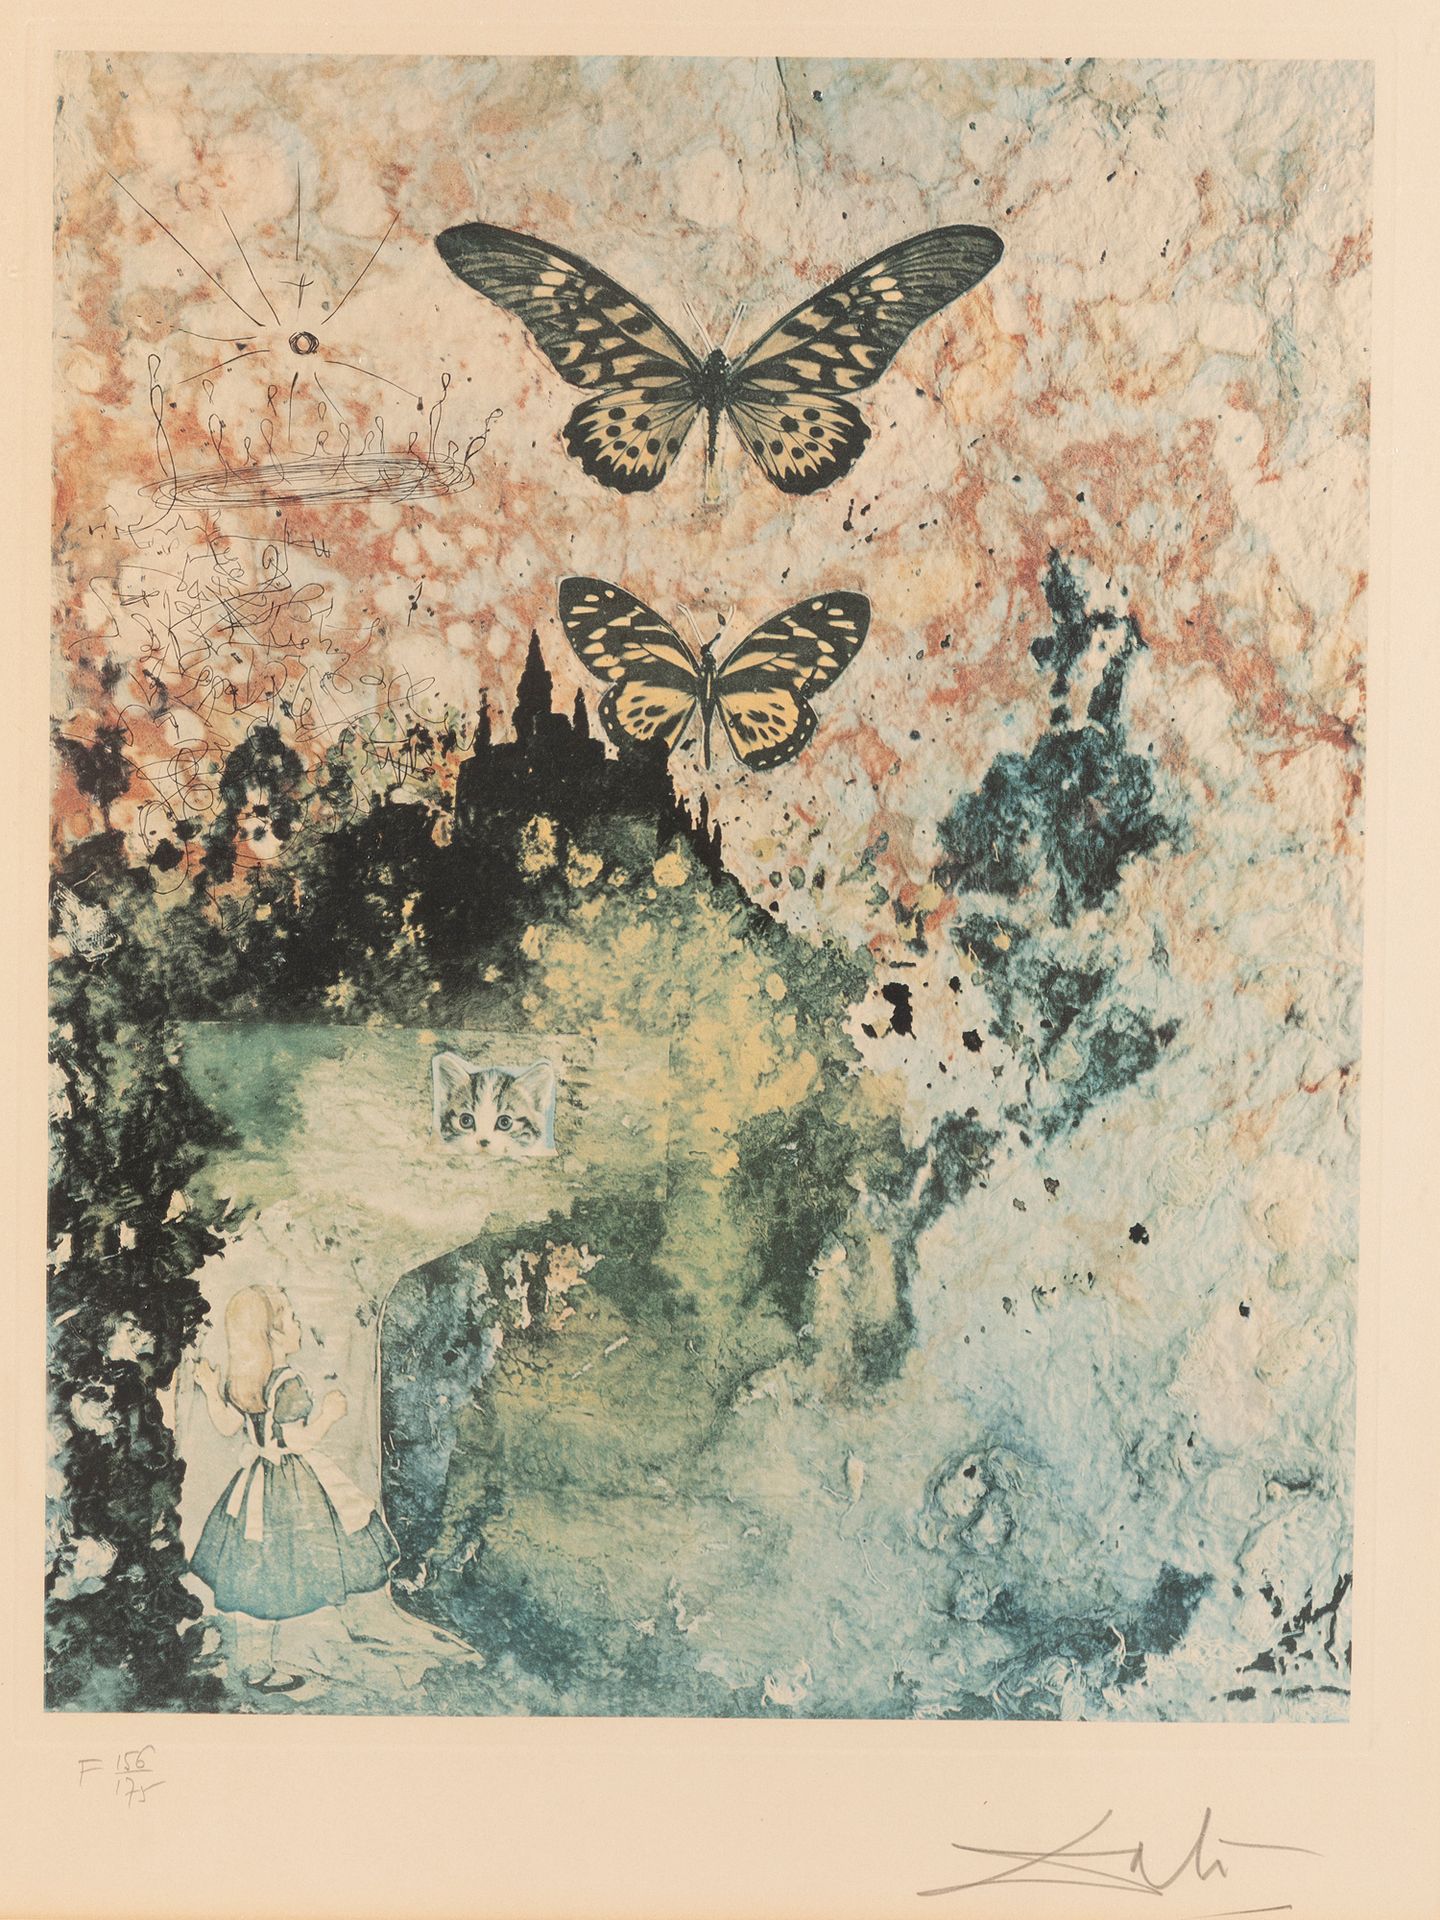 Null 萨尔瓦多-达利(1904-1989)

爱丽丝梦游仙境

石版画

右下方有签名，编号为156/175

61 x 46 cm 正在观看